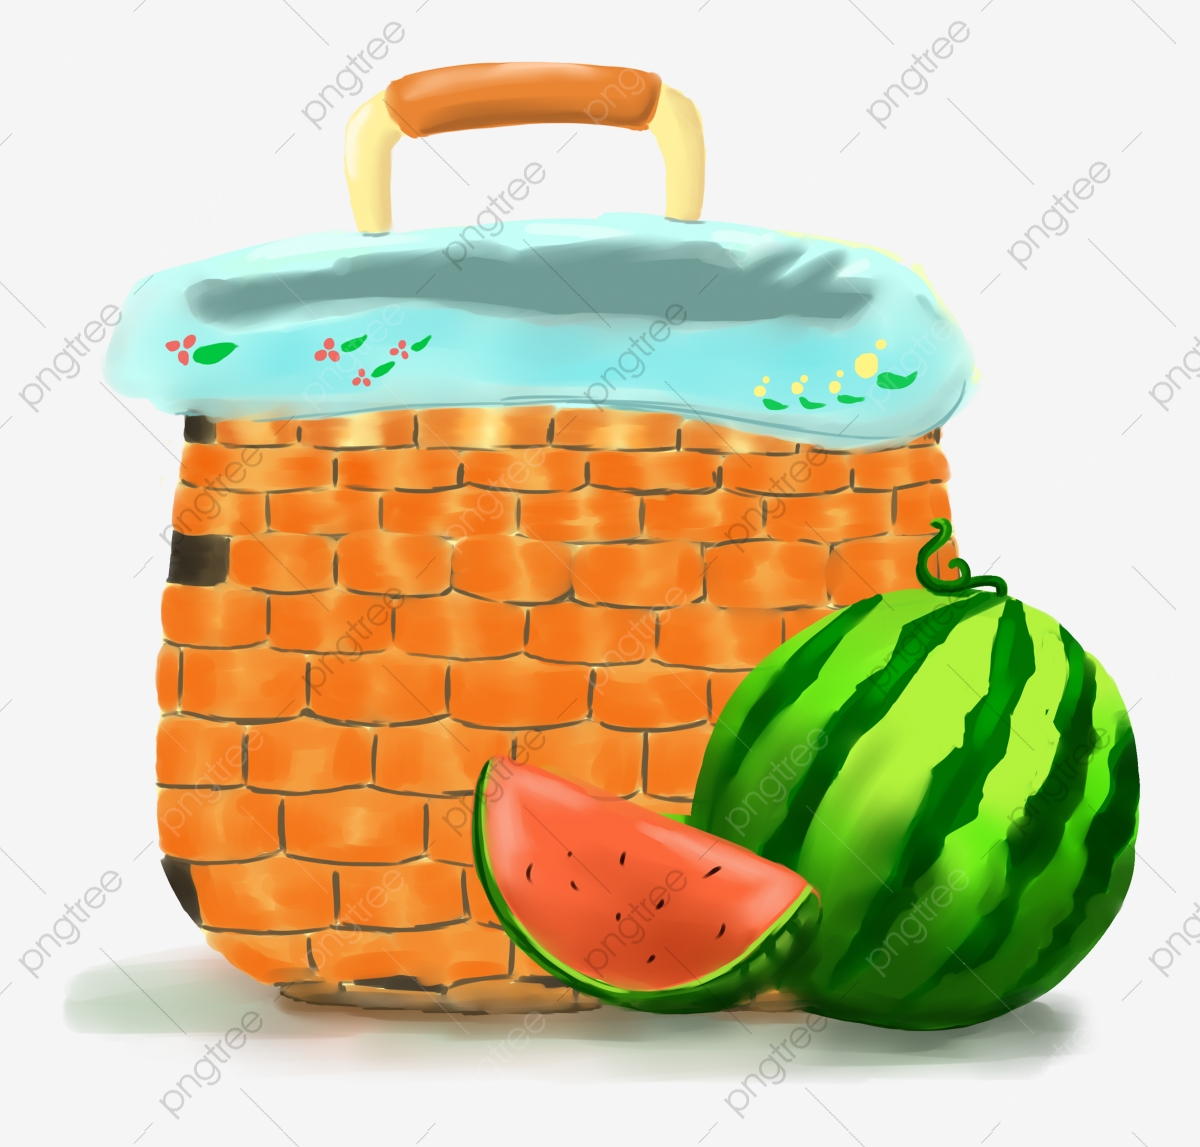 Watermelon clipart basket. Melon fruit storage bag